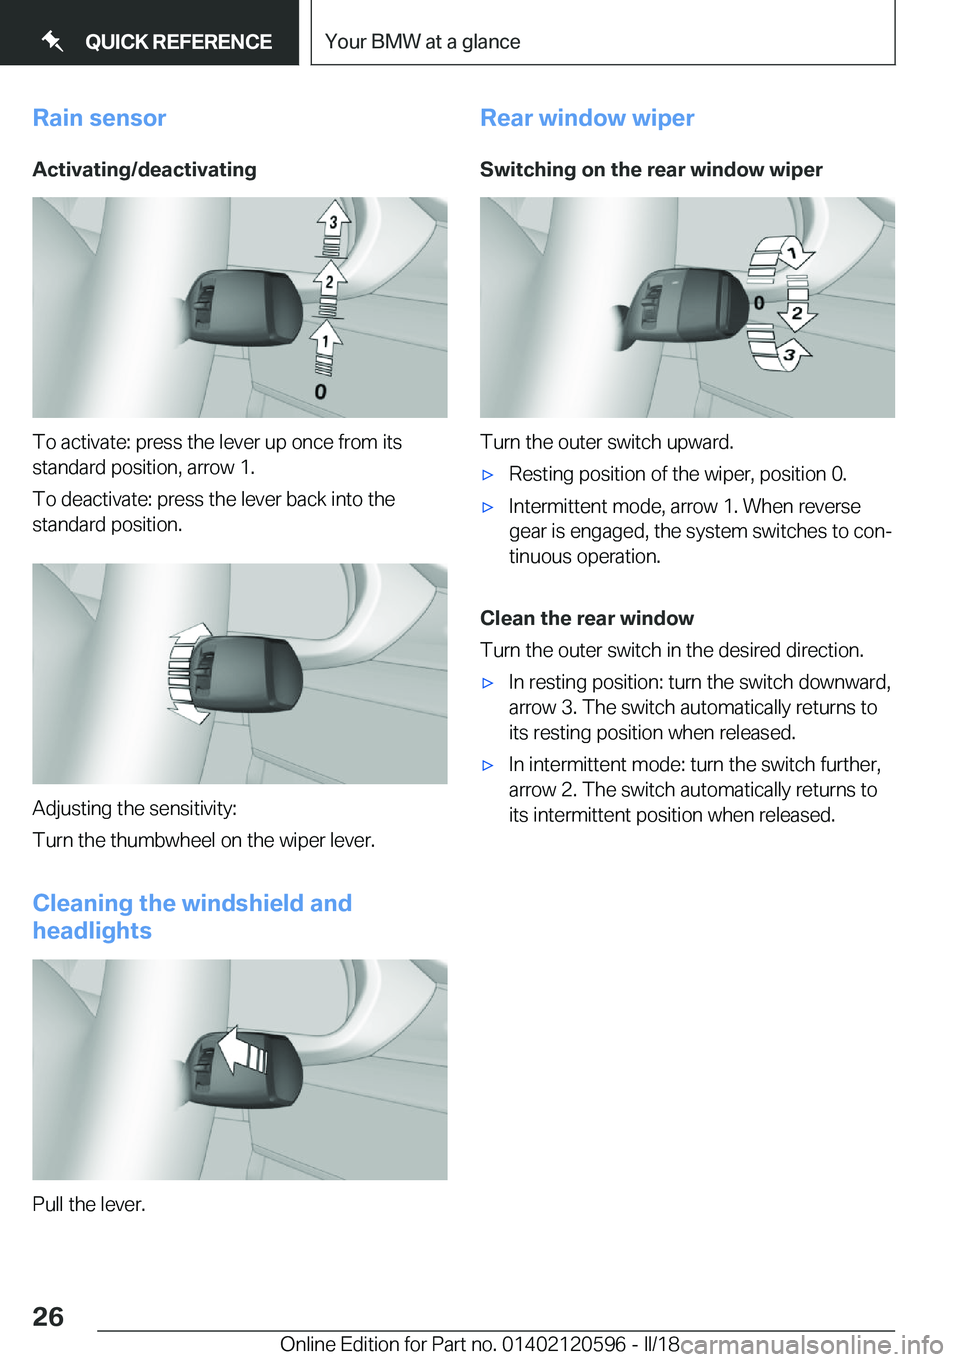 BMW X1 2018 Owners Manual �R�a�i�n��s�e�n�s�o�r�A�c�t�i�v�a�t�i�n�g�/�d�e�a�c�t�i�v�a�t�i�n�g
�T�o� �a�c�t�i�v�a�t�e�:� �p�r�e�s�s� �t�h�e� �l�e�v�e�r� �u�p� �o�n�c�e� �f�r�o�m� �i�t�s
�s�t�a�n�d�a�r�d� �p�o�s�i�t�i�o�n�,� �a